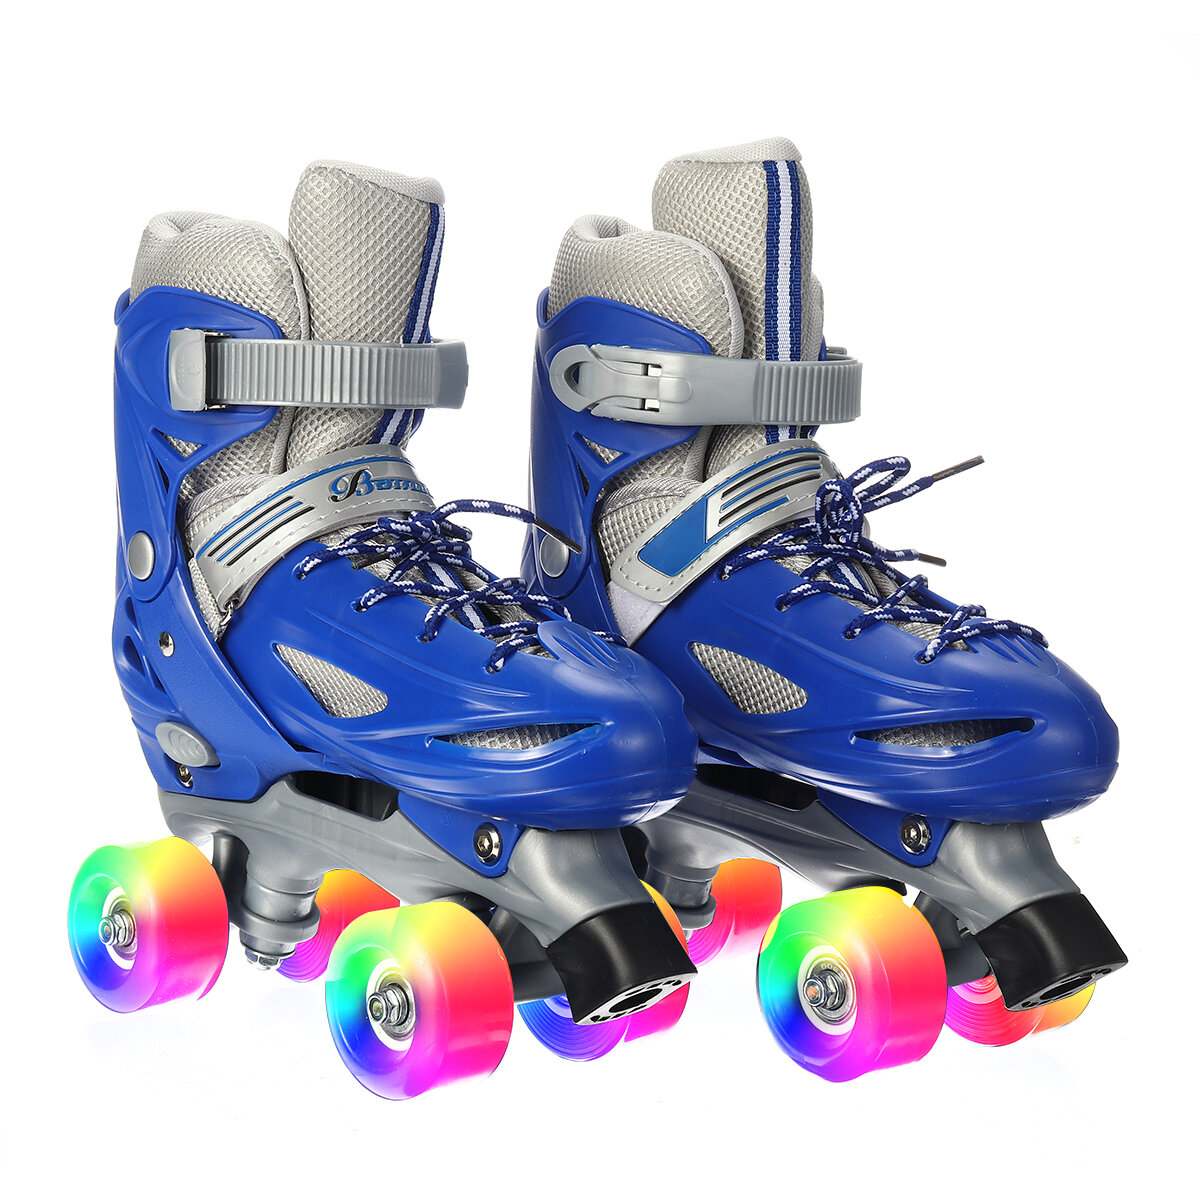 Image of Kids Inline Skates Roller Skates Blades Adjustable Light Up Boots Four Wheel Full Flash